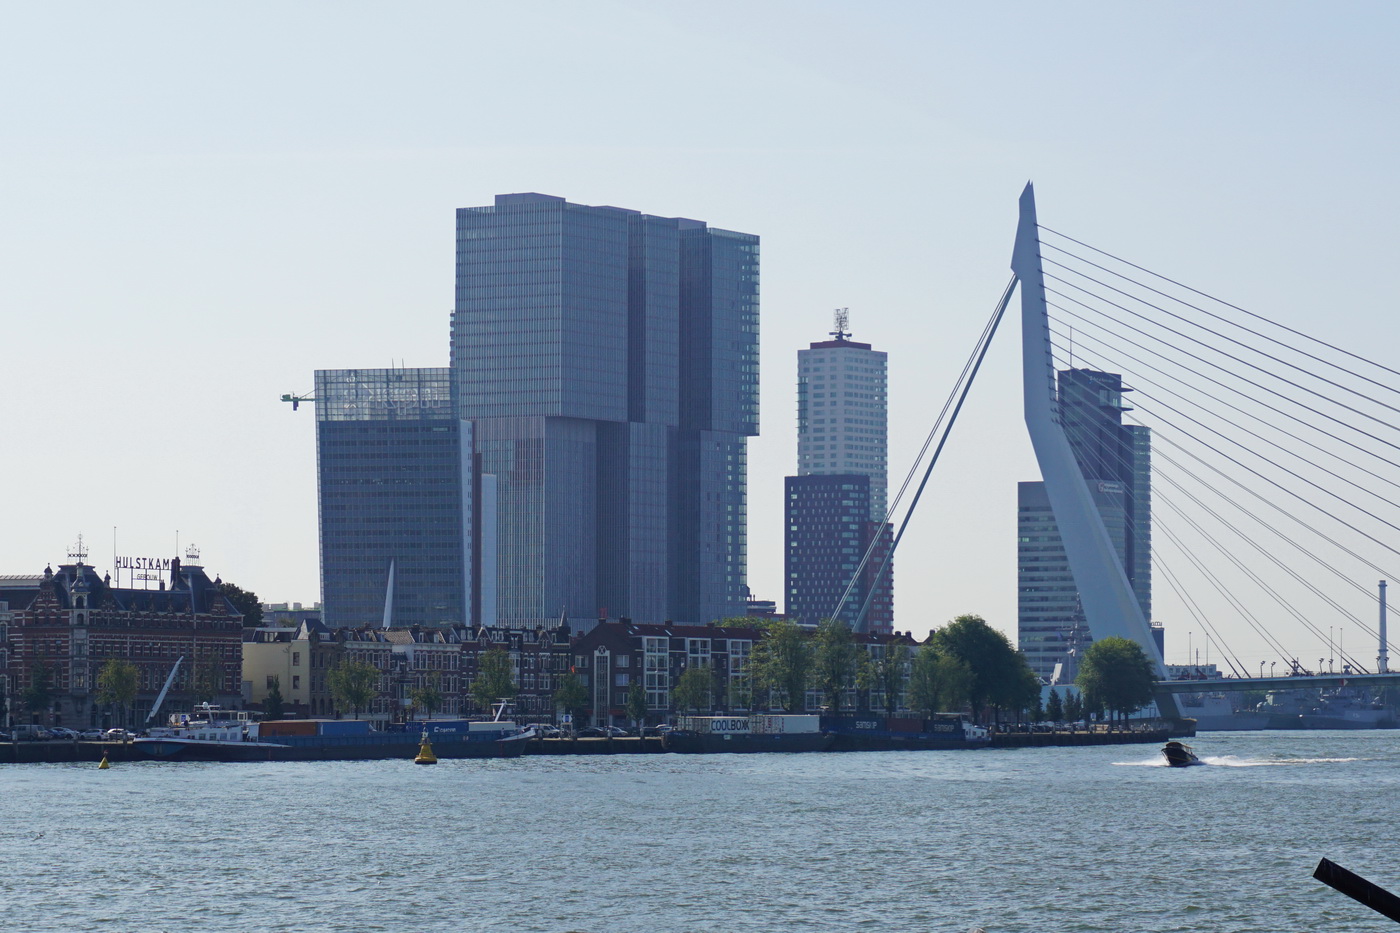 Erasmusbrücke in Rotterdam 